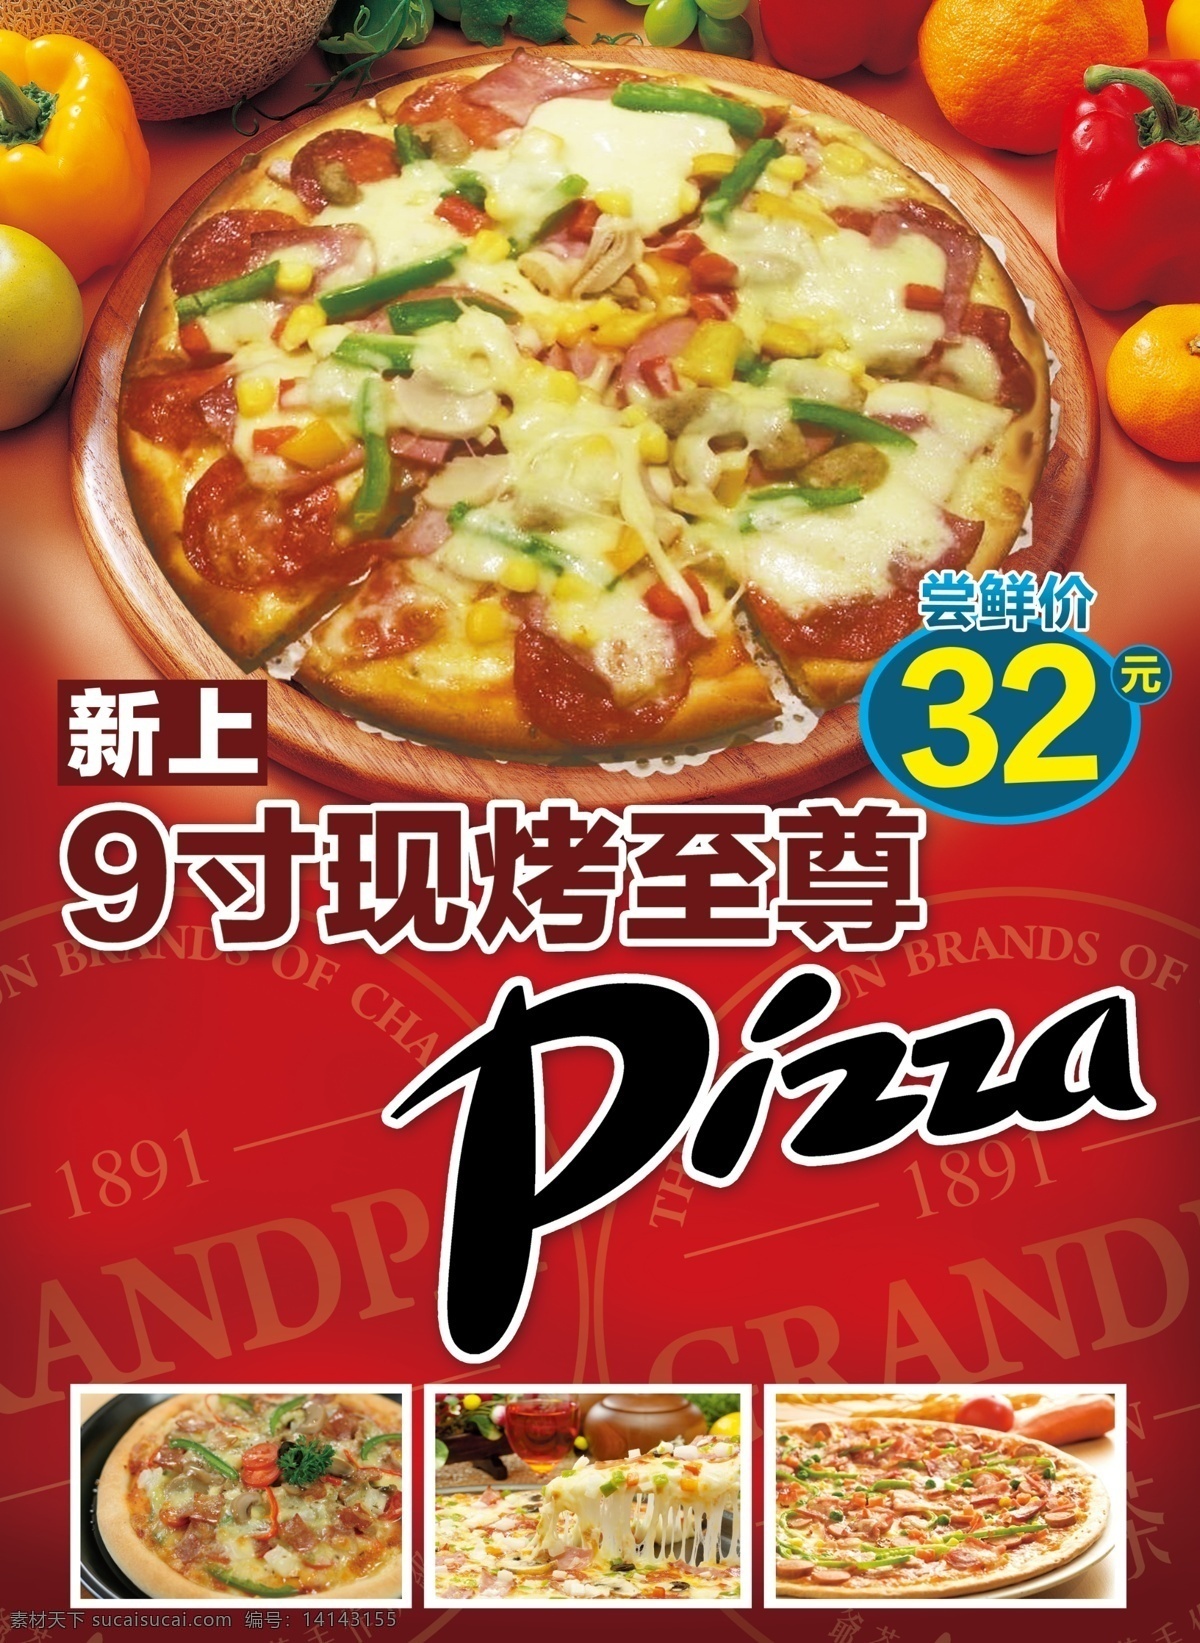 超级至尊披萨 pizza 超级至尊 披萨 海报 蔬菜 蔬果 红色背景 分层